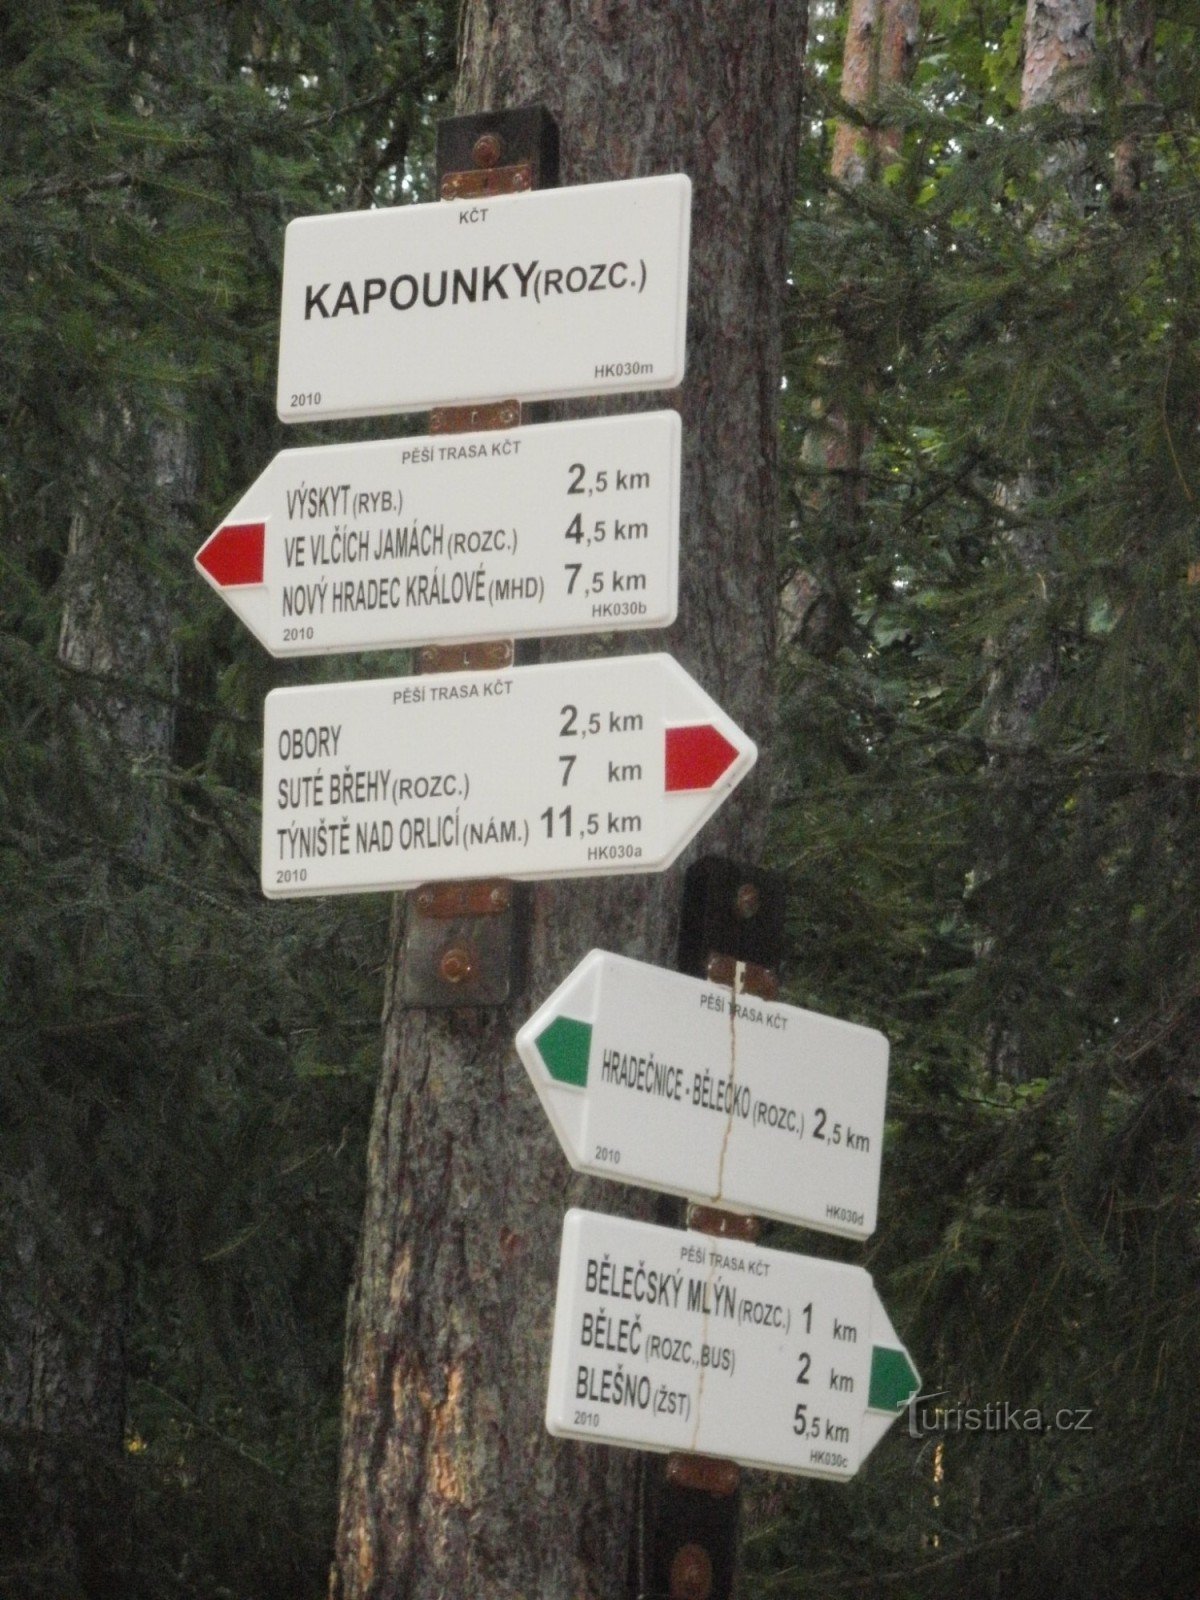 Križanje Kapounky - Hradecké lesy